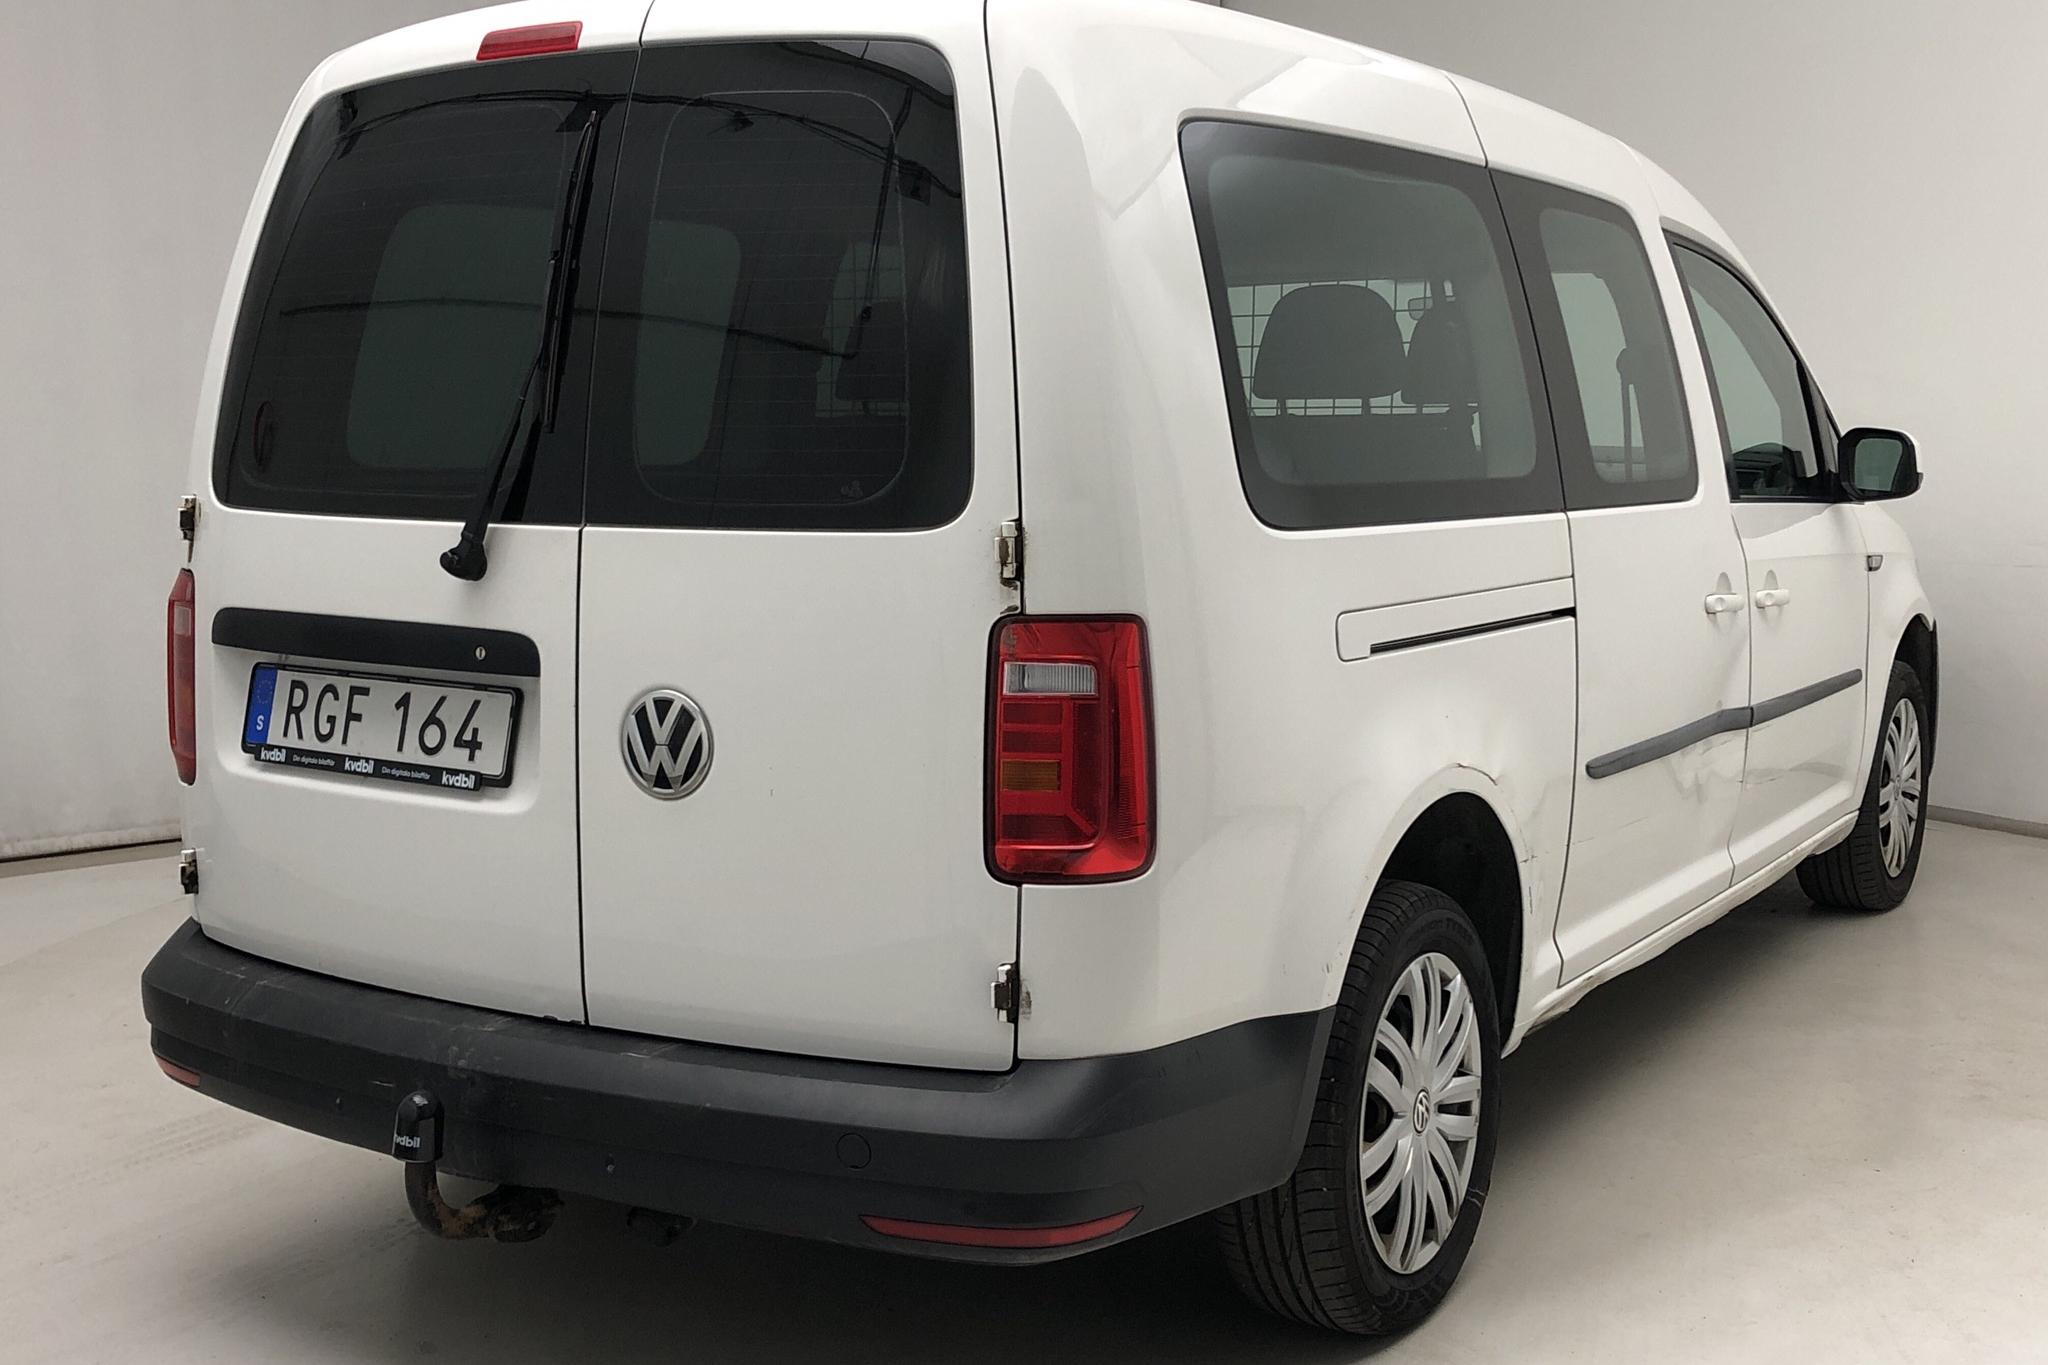 VW Caddy Maxi Life 1.4 TGI (110hk) - 14 127 mil - Automat - vit - 2017